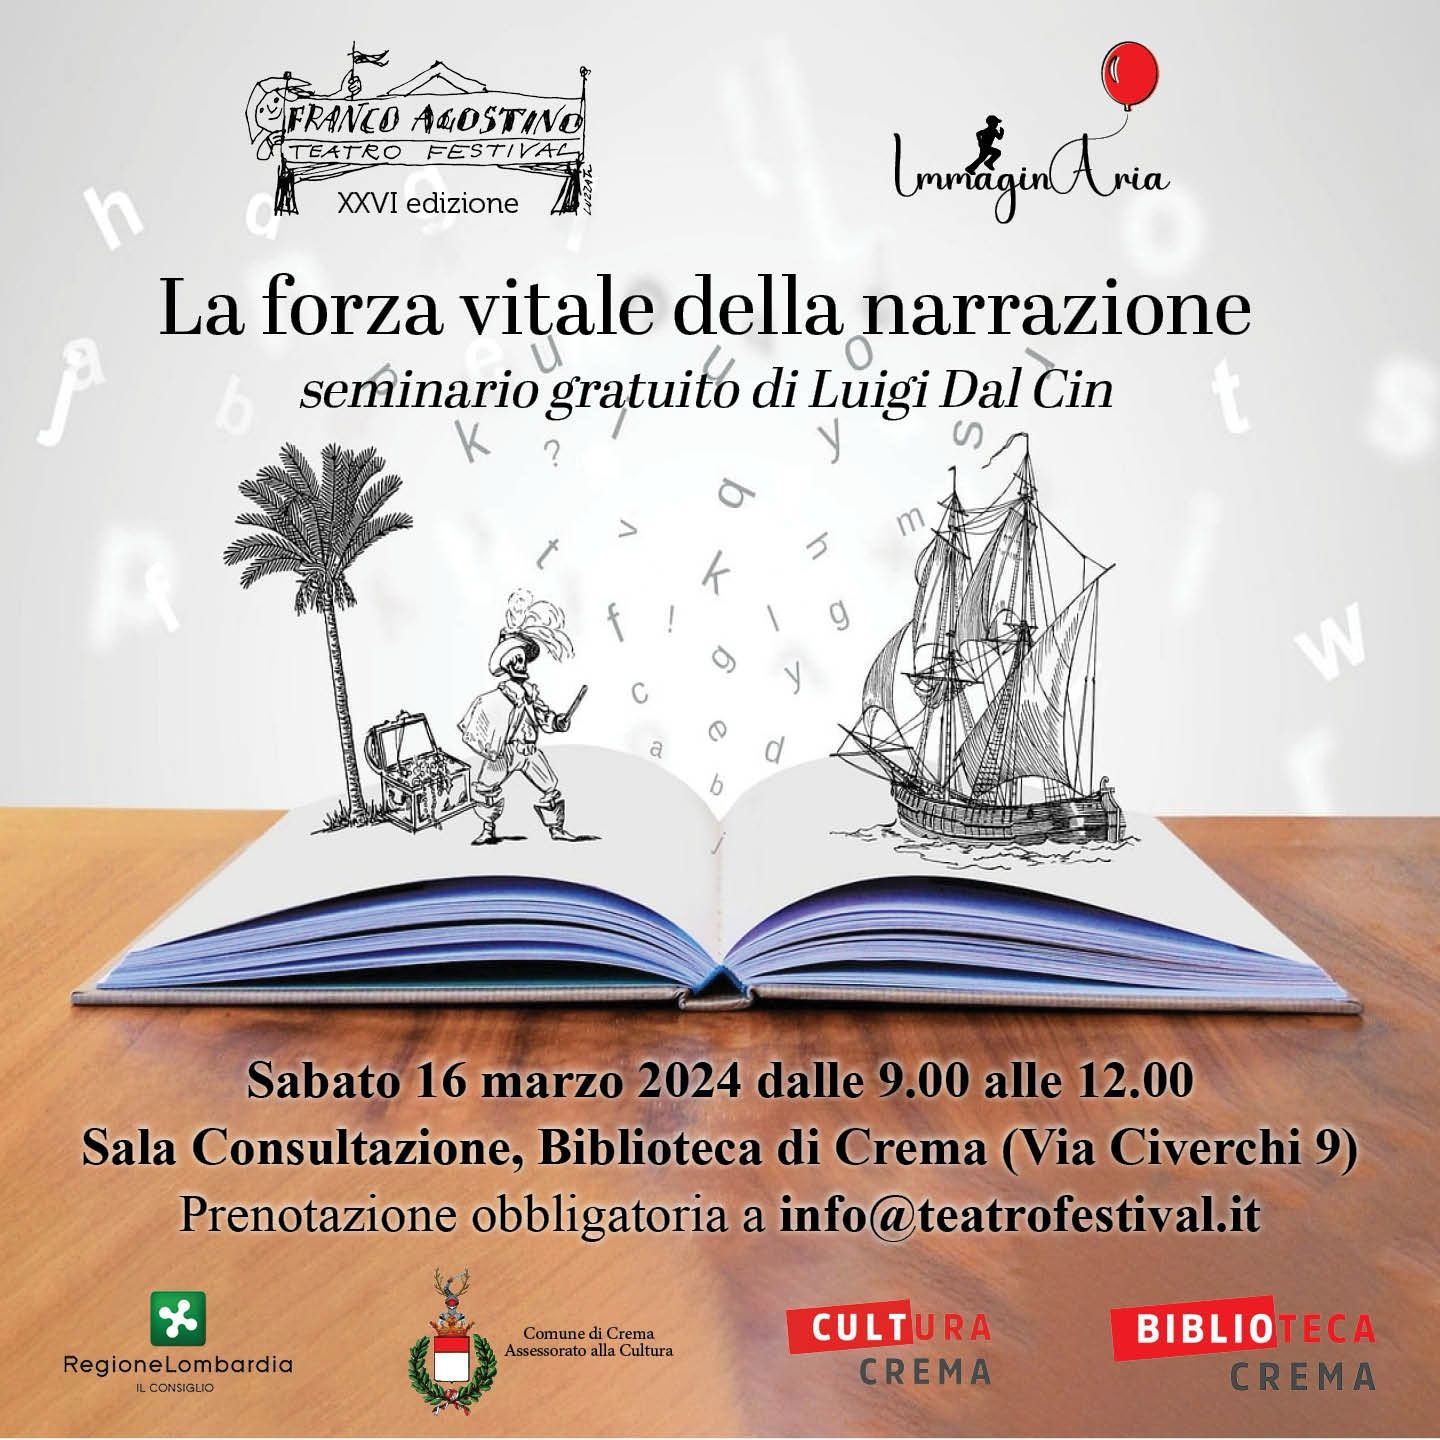 Il Franco Agostino Teatro Festival offre un seminario gratuito di scrittura per adulti